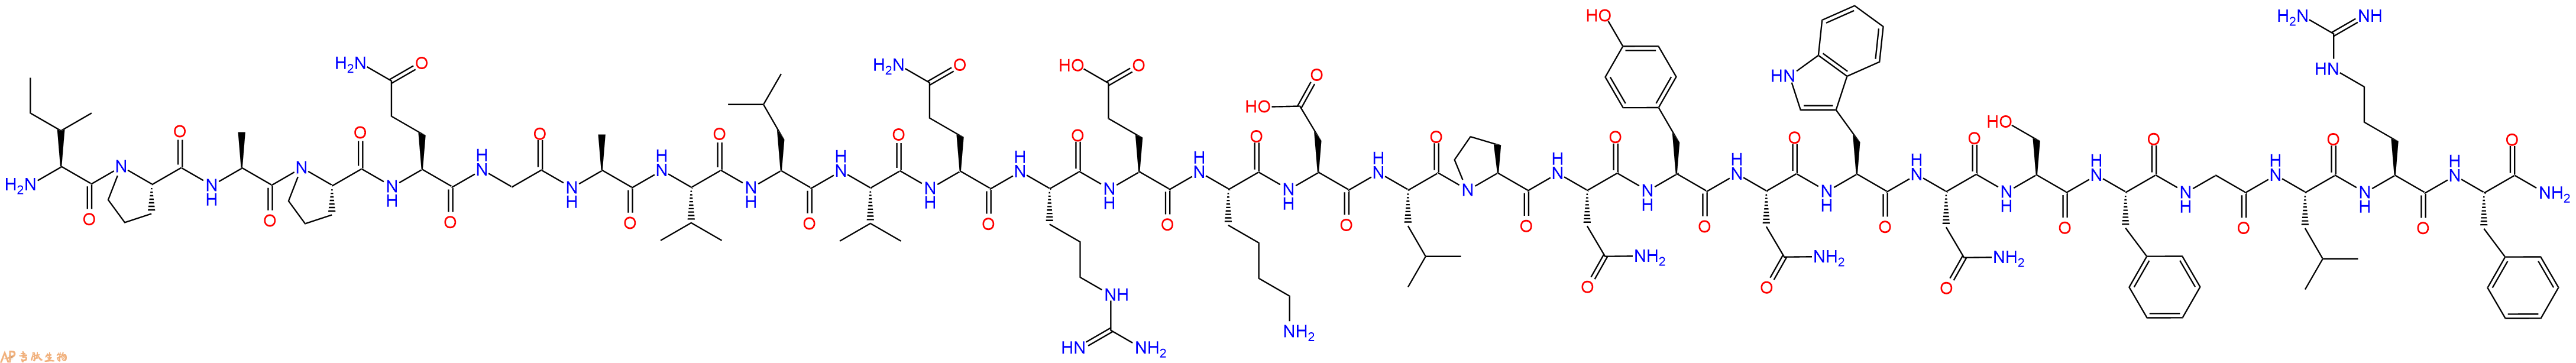 专肽生物产品吻素 Kisspeptin-54 (27-54) (human)1135442-77-1